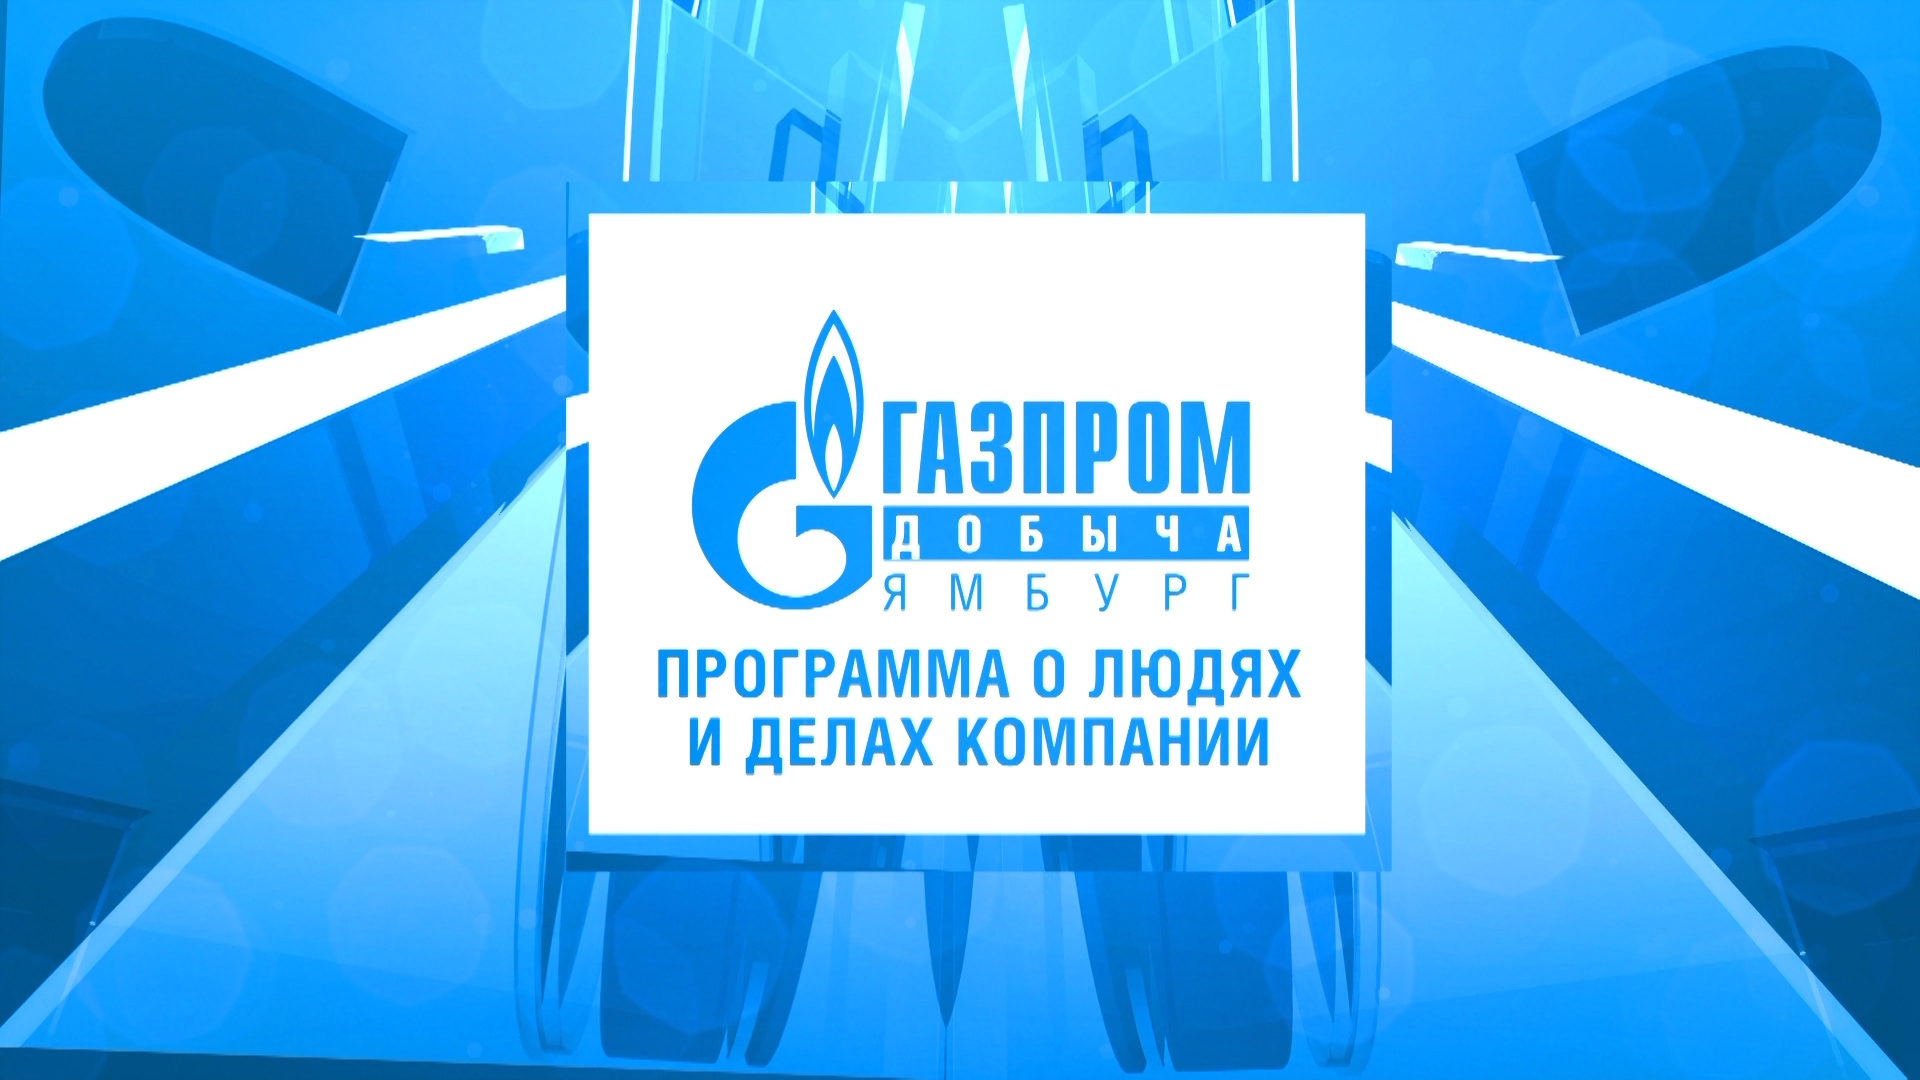 3 октября / Программа о людях и делах компании ООО "Газпром добыча Ямбург"